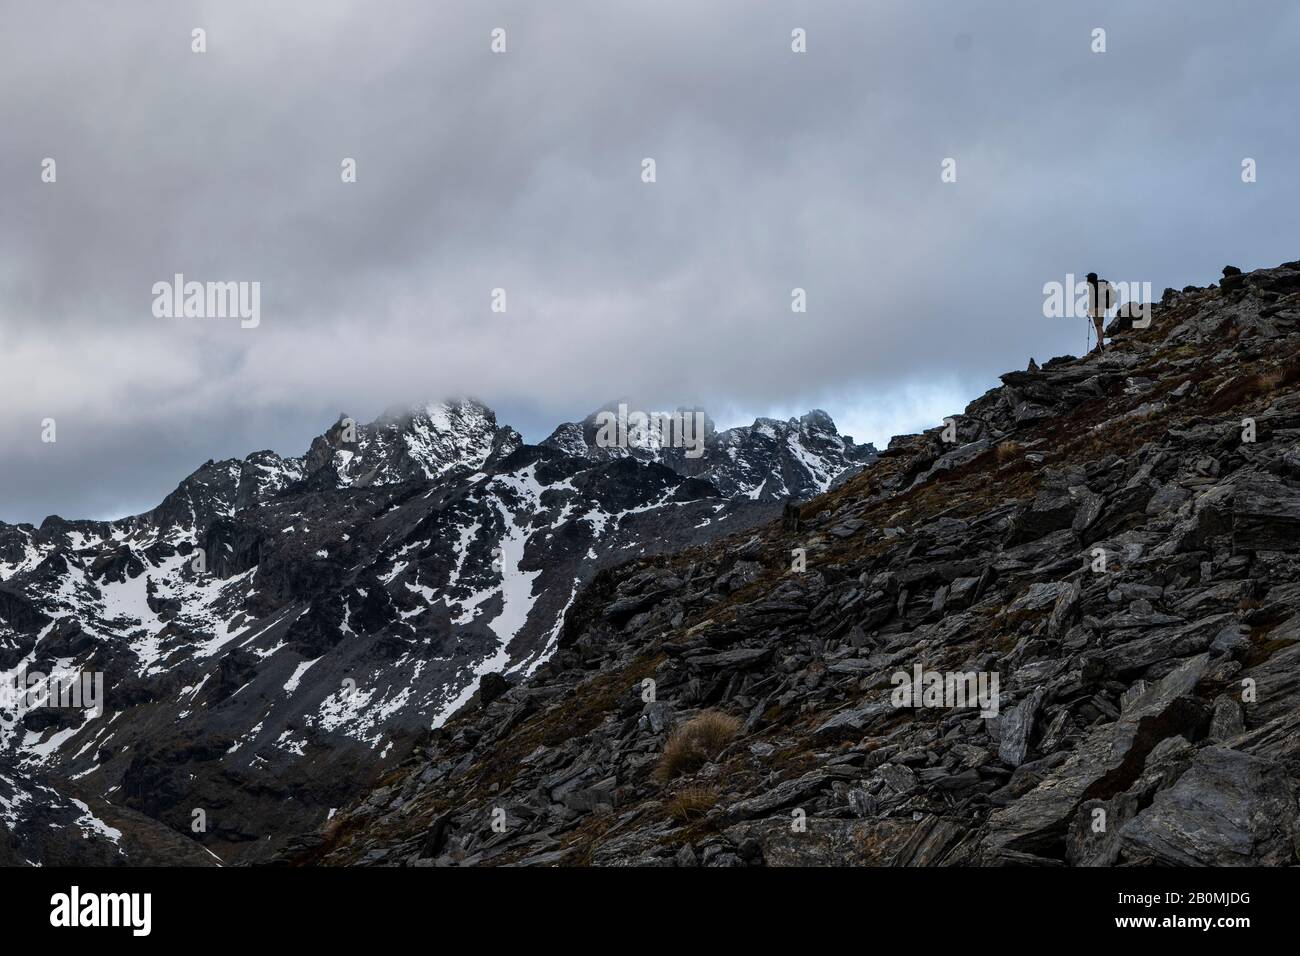 Figura en una cresta rocosa, en las montañas nevadas de Nueva Zelanda Foto de stock